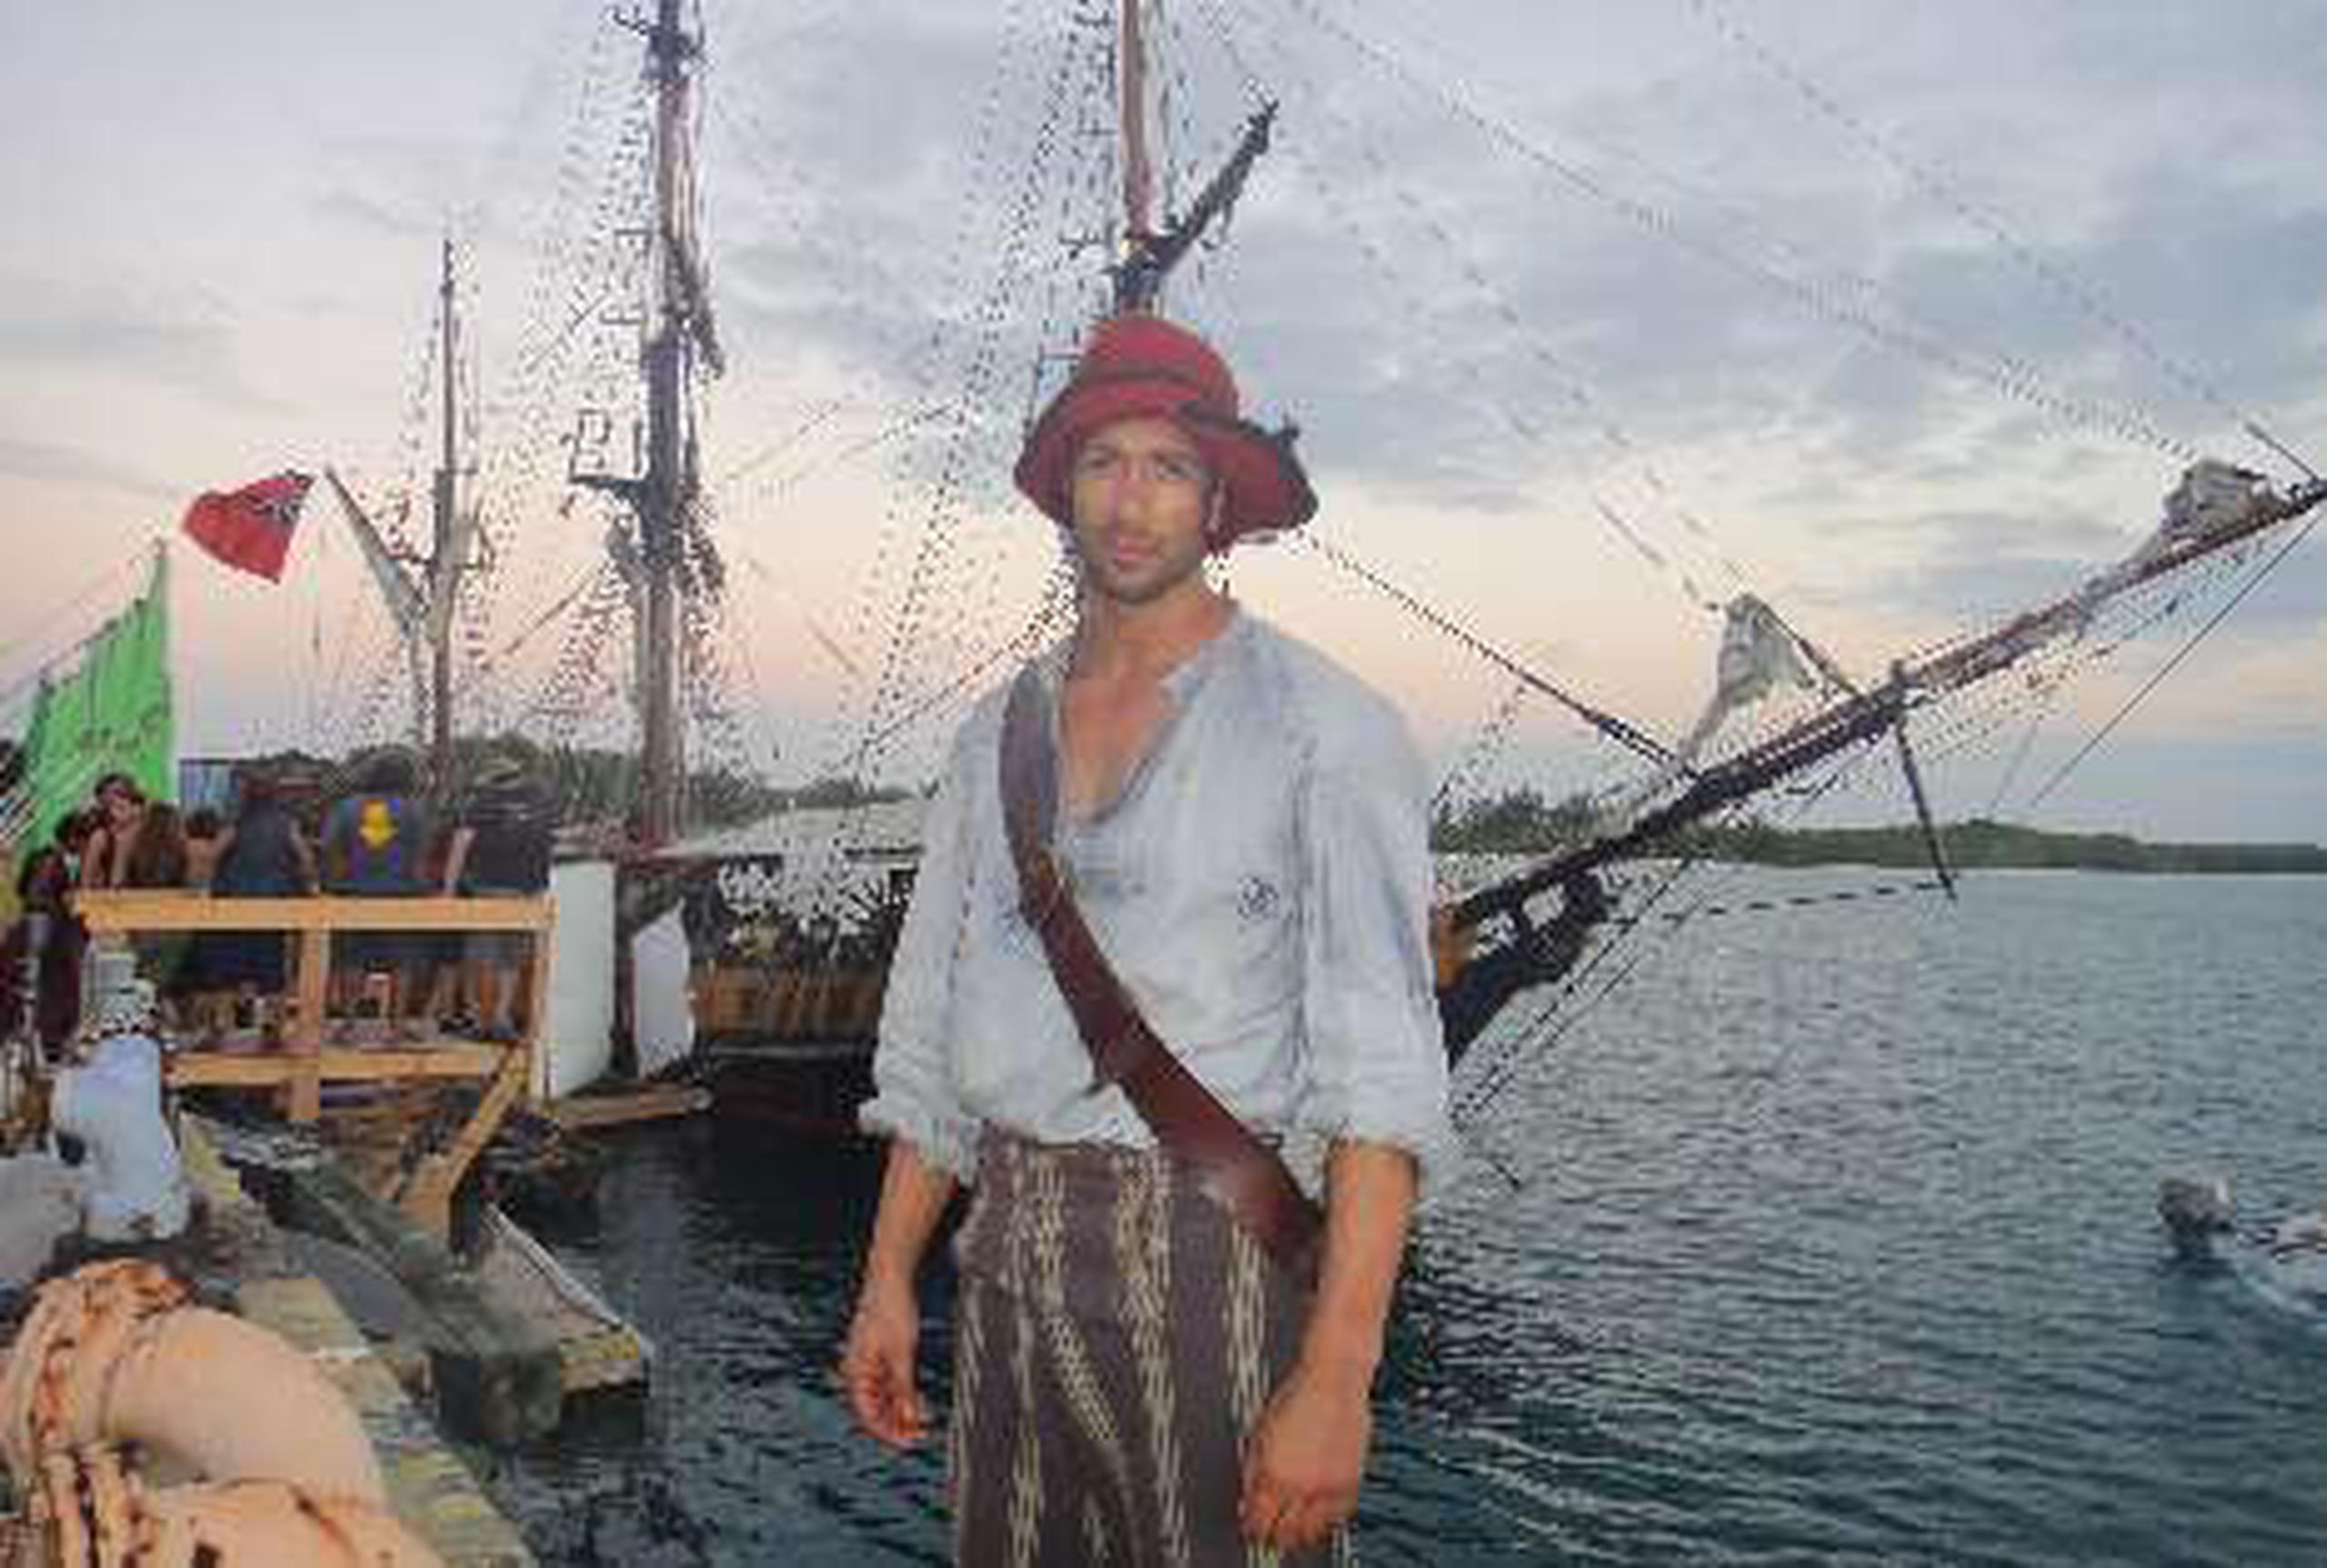  Lorenzo encarna al  pirata “Allardyce” en la  producción inglesa Treasure Island. &nbsp;<font color="yellow">(Suministradas)</font>